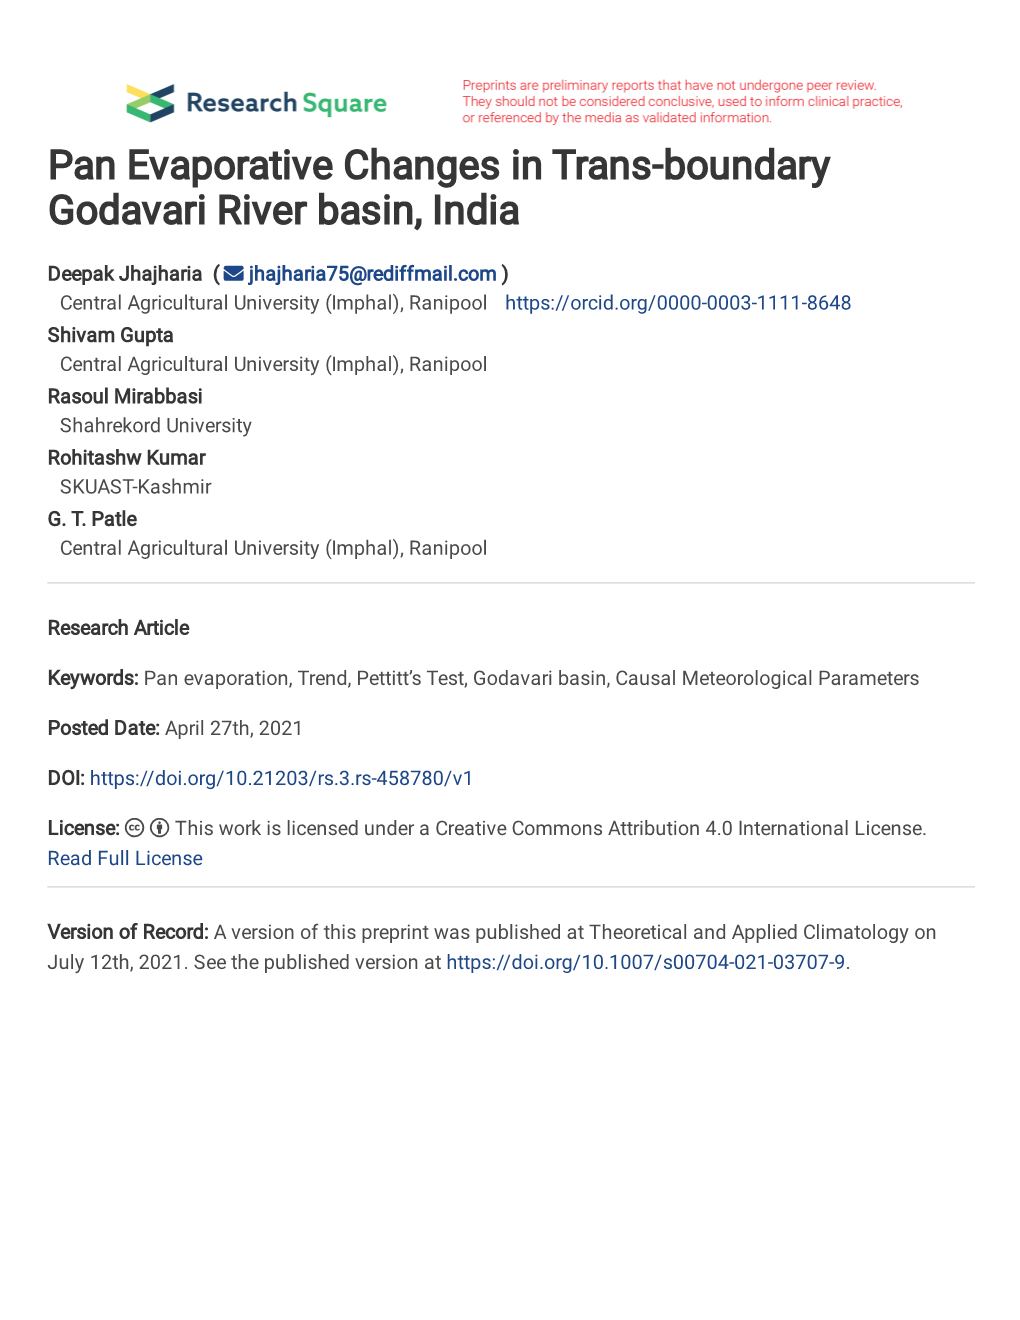 Pan Evaporative Changes in Trans-Boundary Godavari River Basin, India